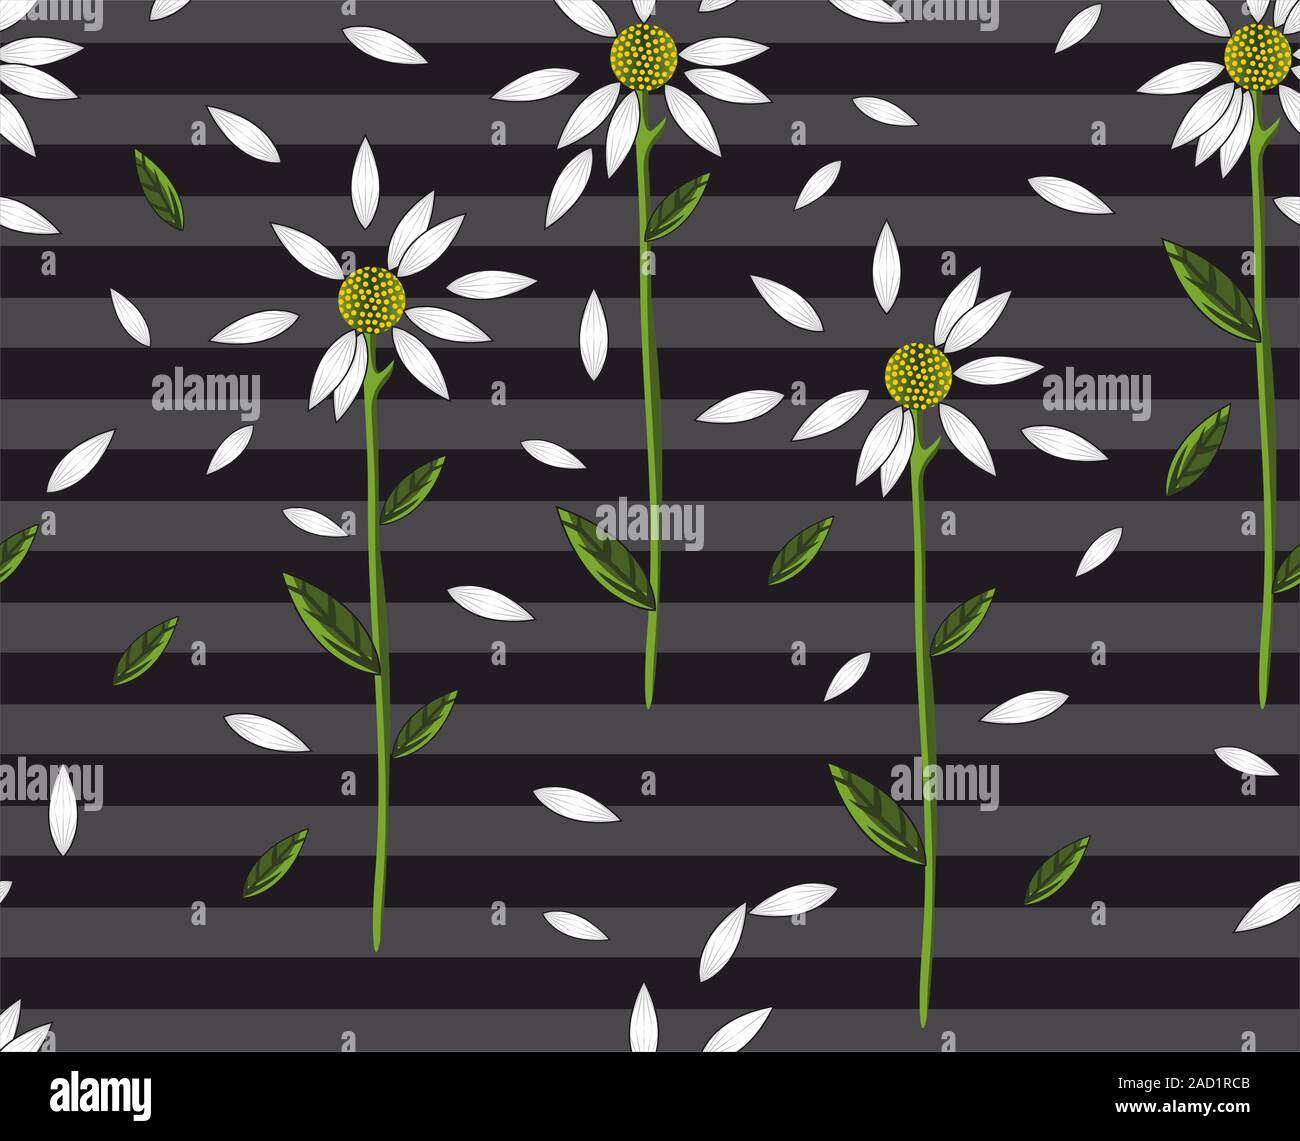 Seamless daisy pattern su strisce grigie e sfondo nero. Fiori bianchi per la stampa di tessuti. - Vettore Illustrazione Vettoriale